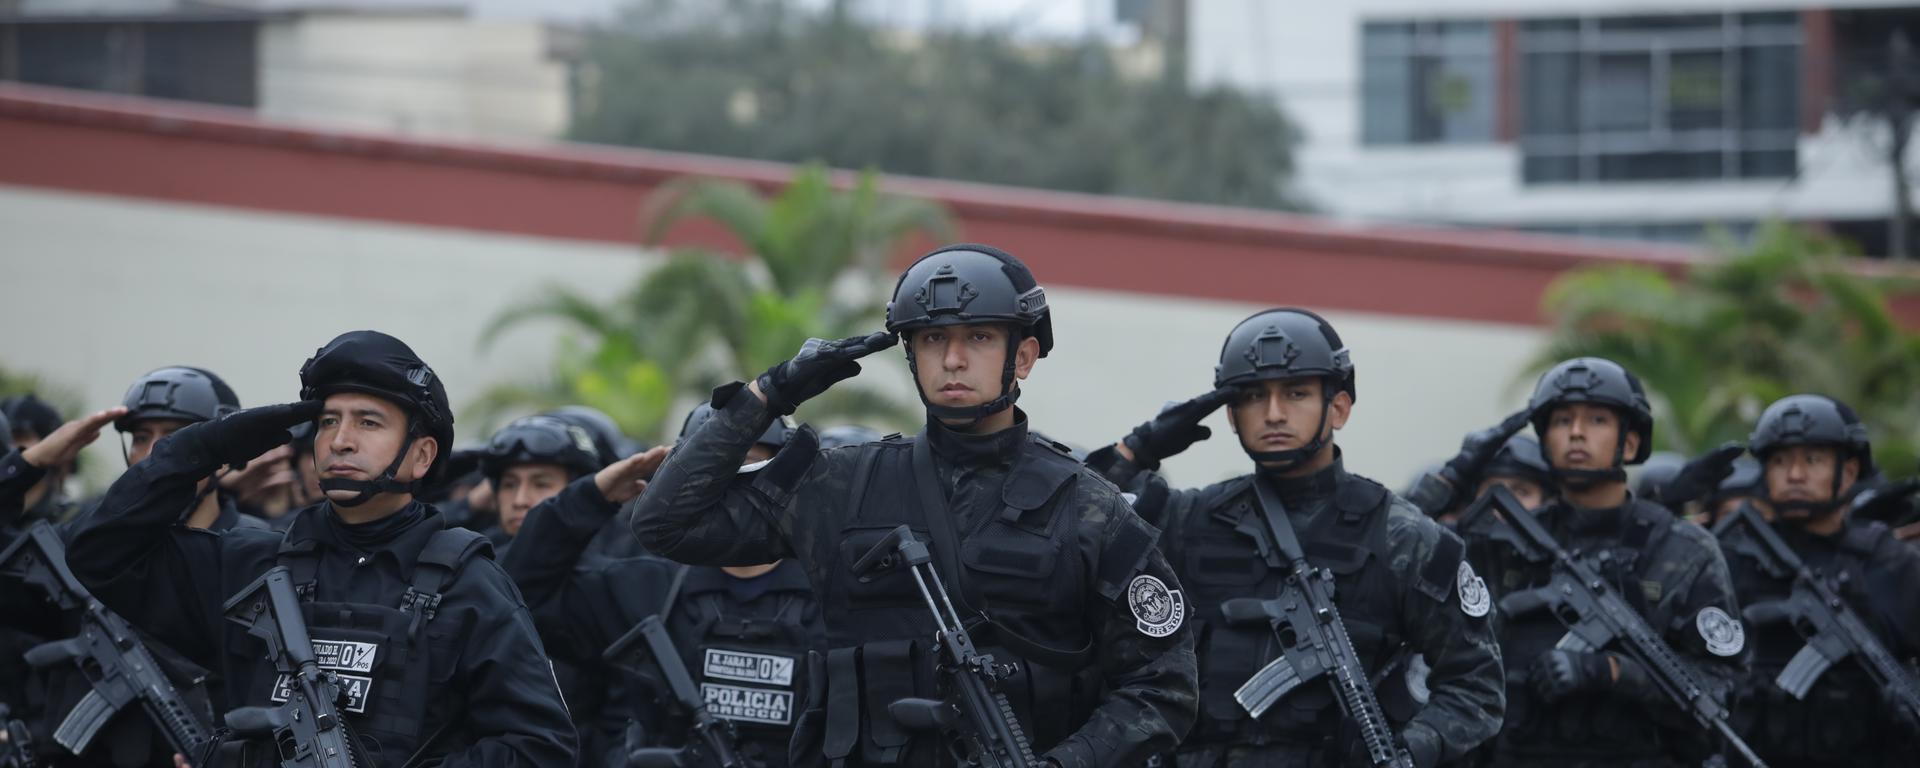 Nuevos grupos especializados de la PNP para combatir la criminalidad organizada: ¿Por qué se cuestiona su creación y cuáles son sus objetivos?